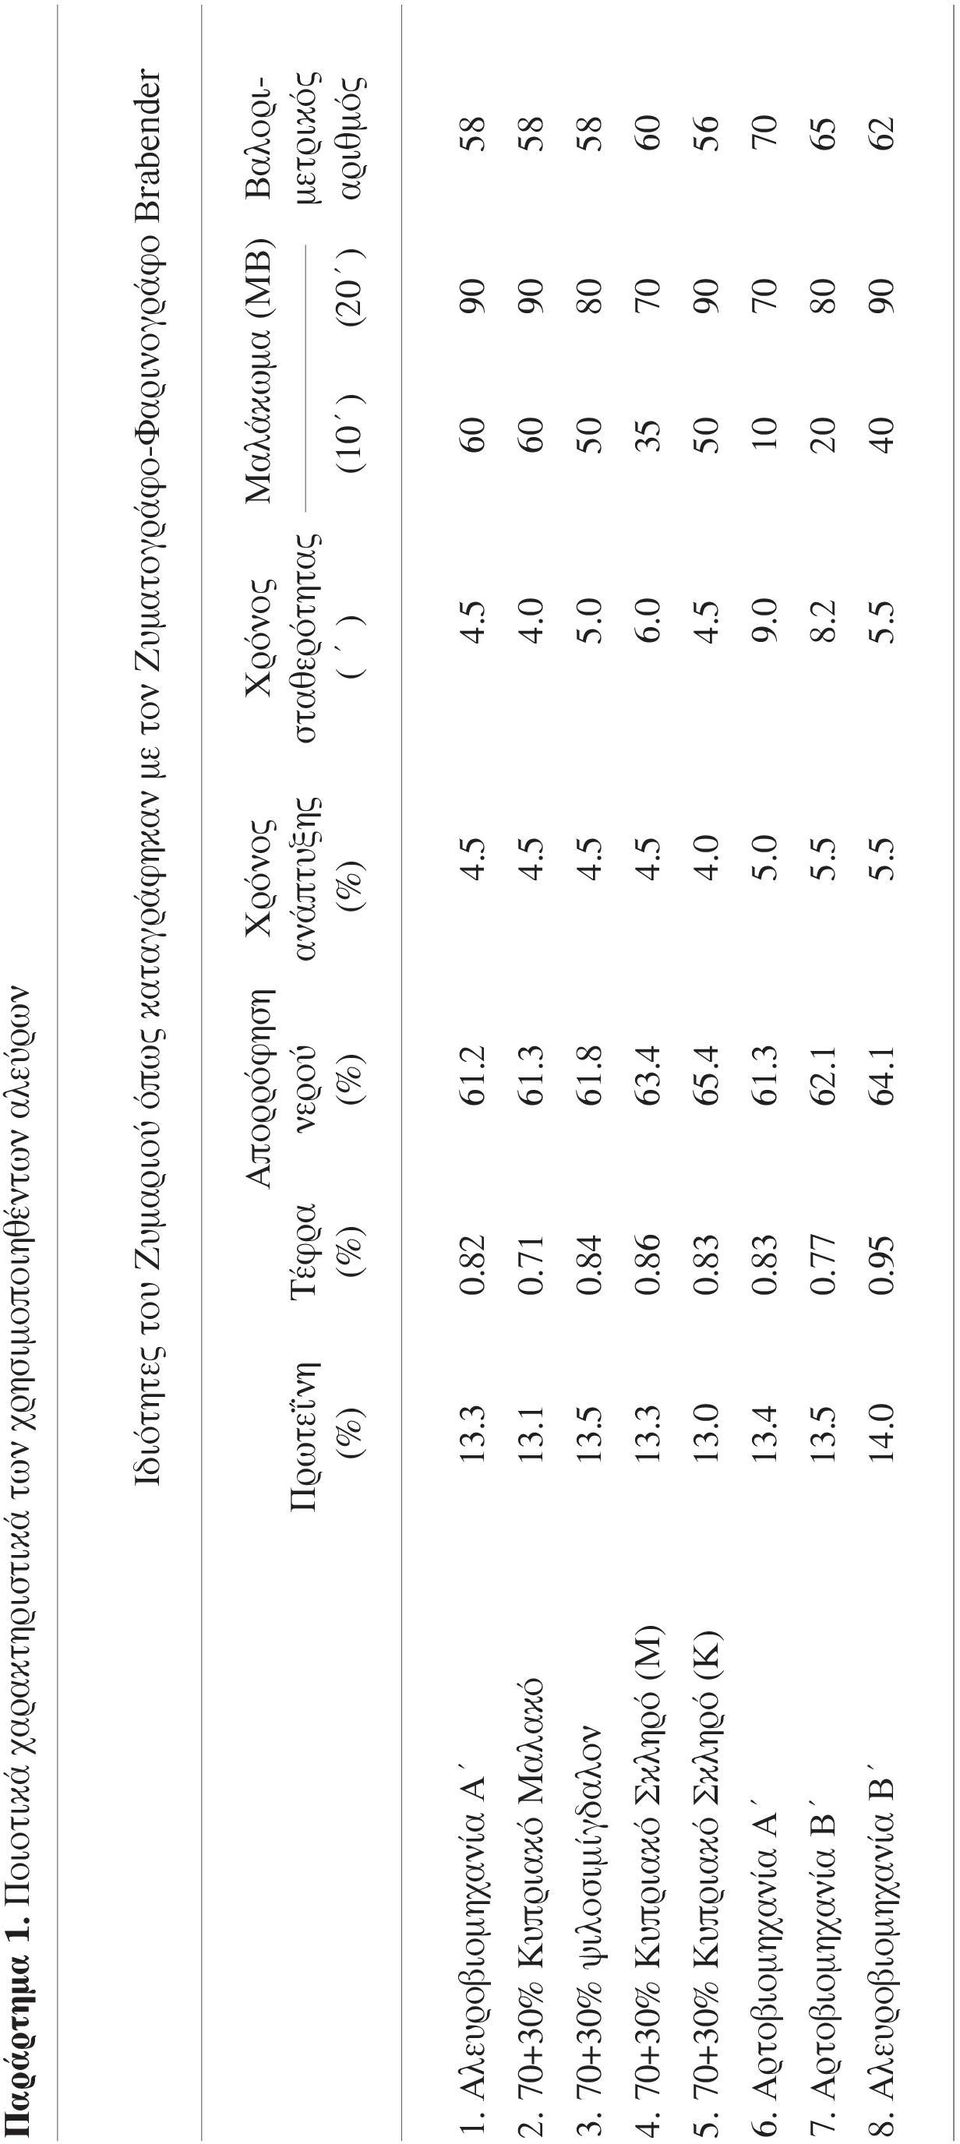 Πρωτεΐνη Τέφρα νερού ανάπτυξης σταθερότητας µετρικός (%) (%) (%) (%) ( ) (10 ) (20 ) αριθµός 1. Αλευροβιοµηχανία Α 13.3 0.82 61.2 4.5 4.5 60 90 58 2. 70+30% Κυπριακό Μαλακό 13.1 0.